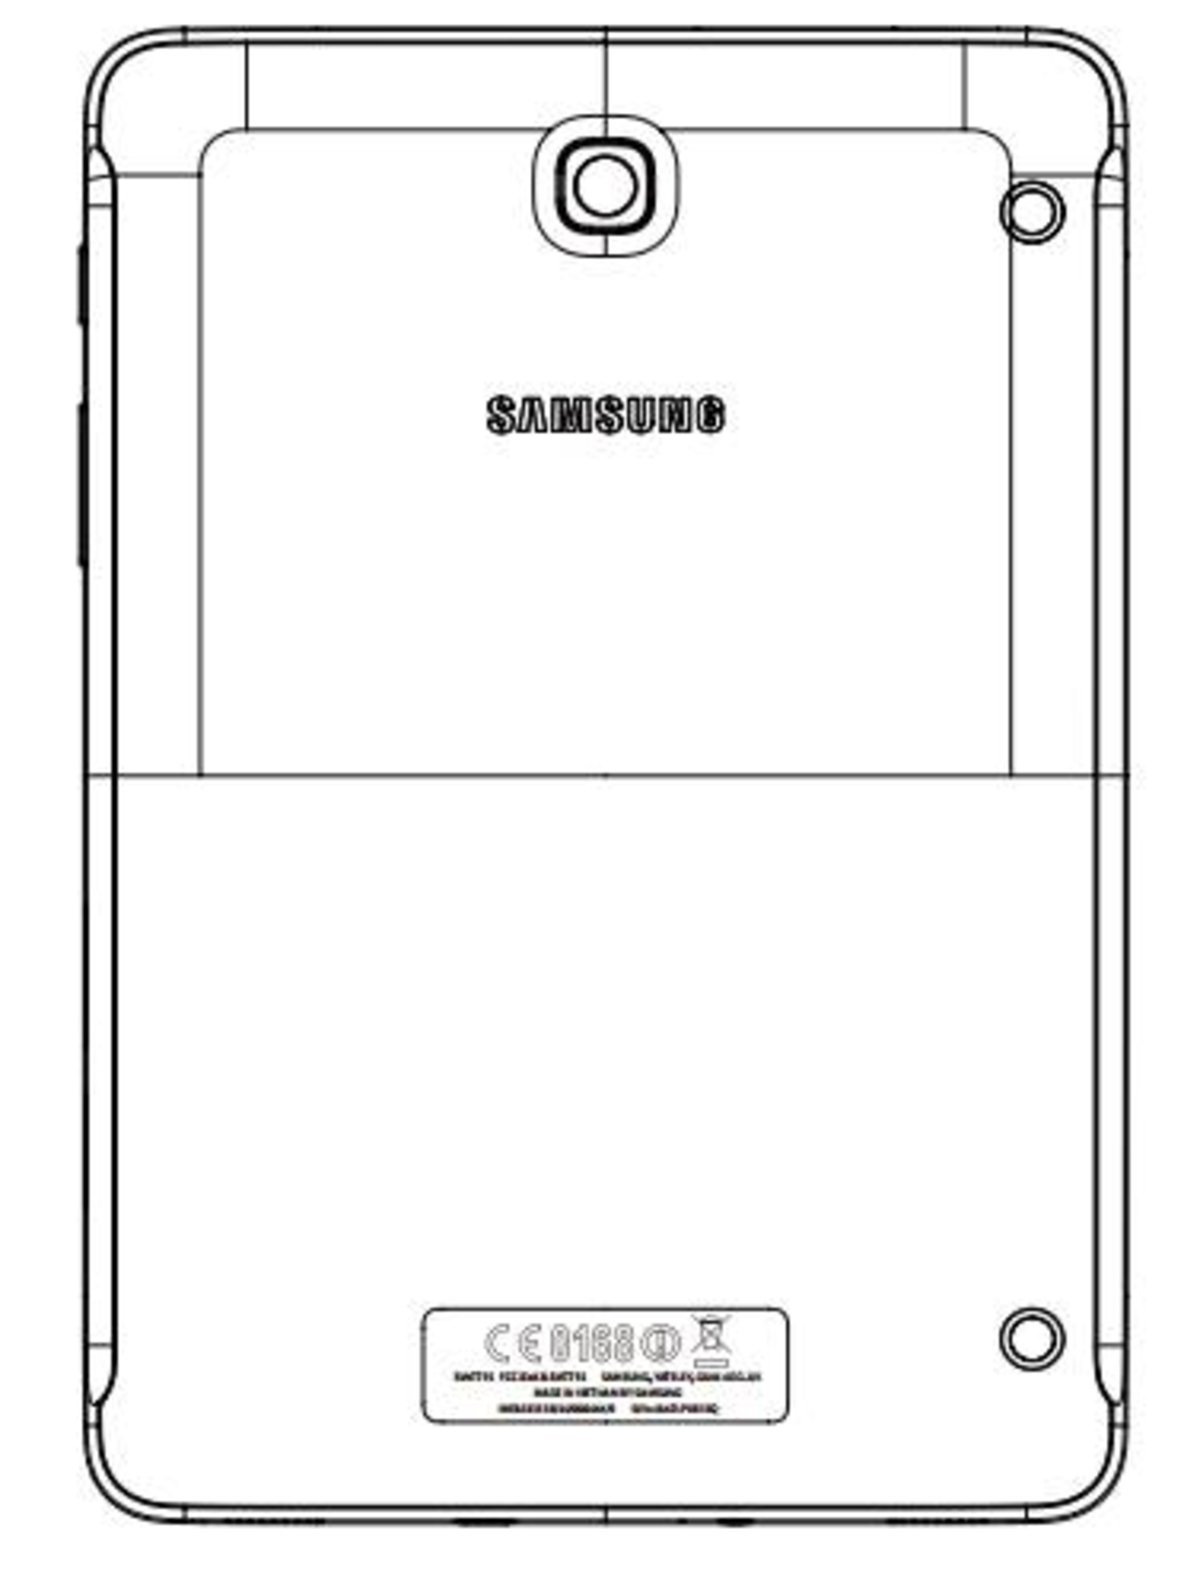 La Samsung Galaxy Tab S2 8.0 pasa por la FCC y se filtran imágenes de su aspecto